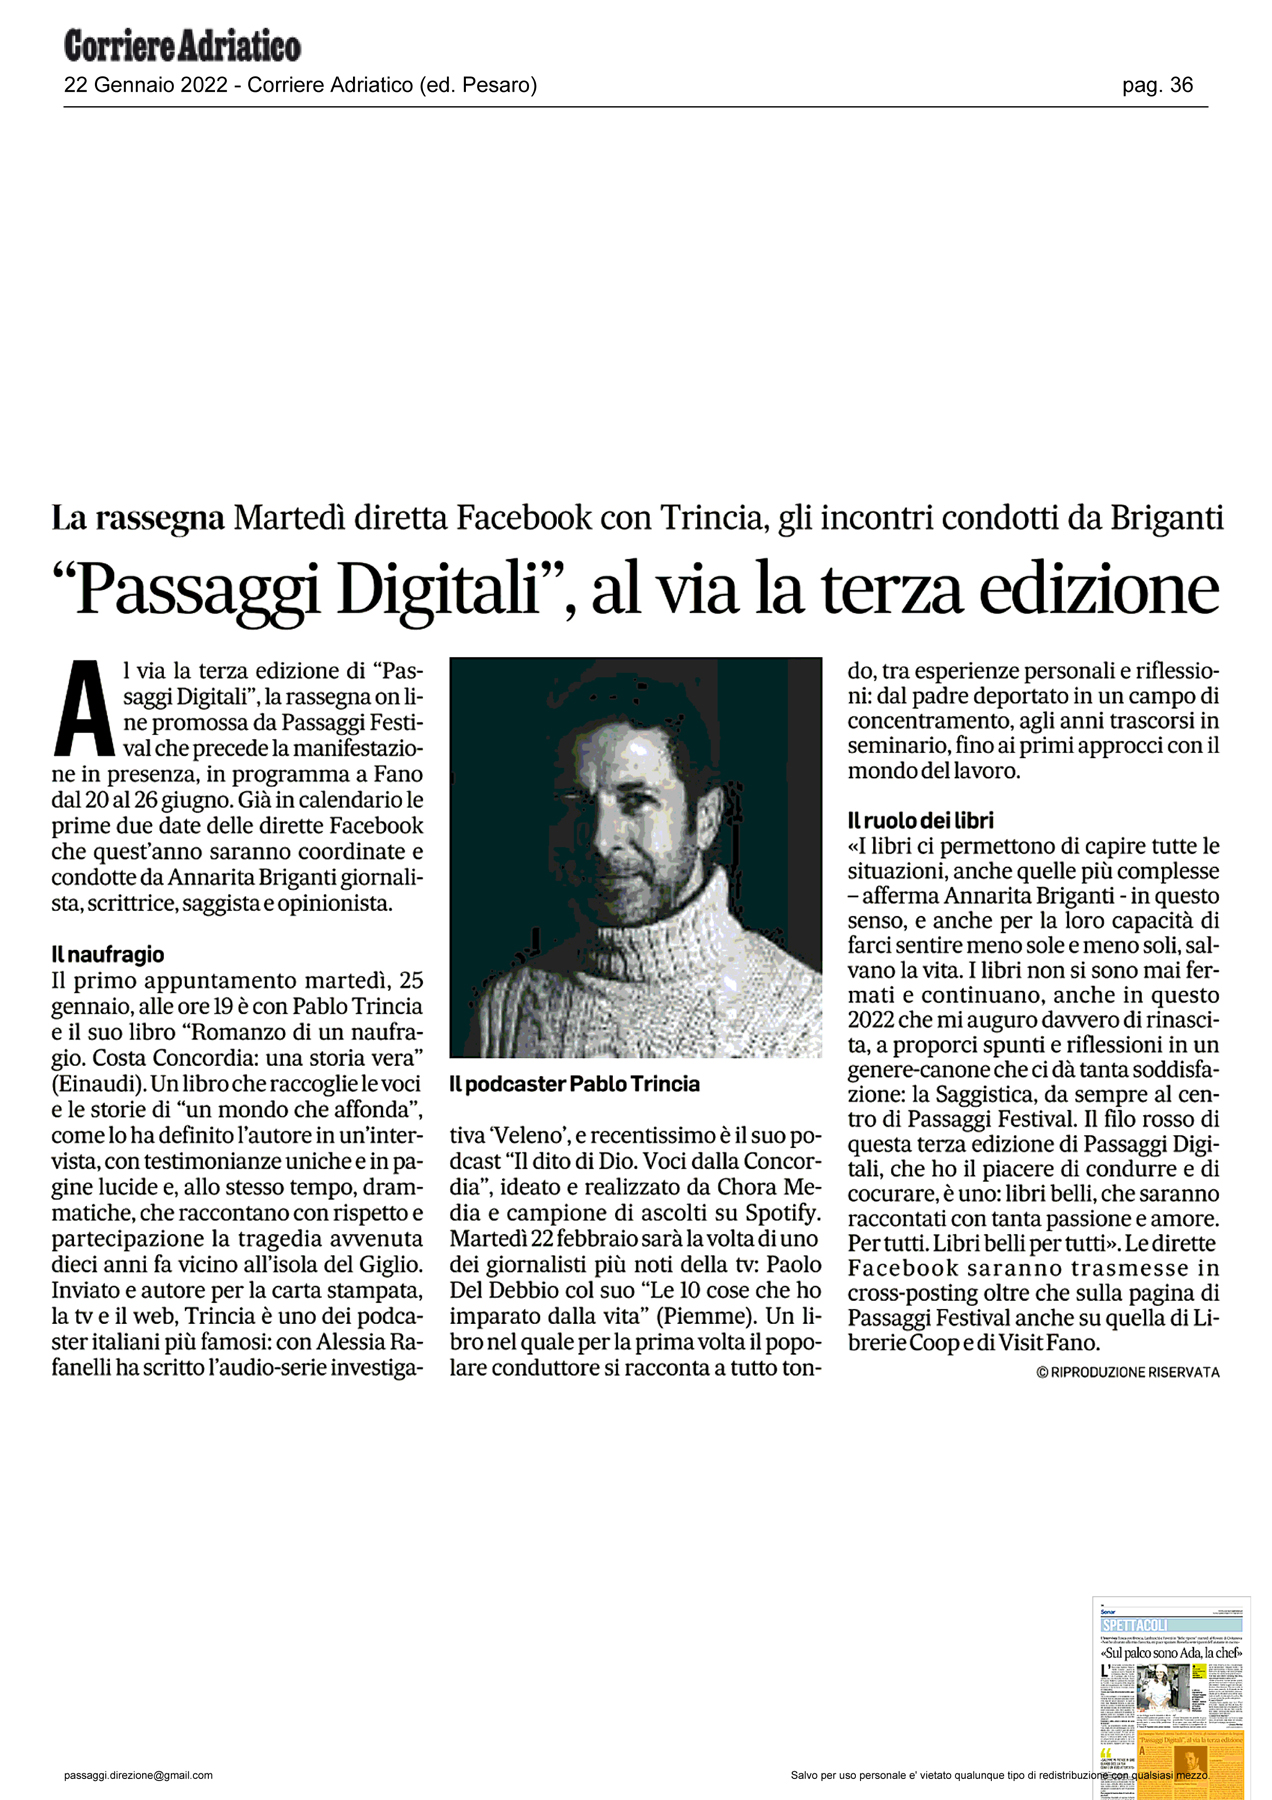 Corriere_Adriatico_passaggi-digitali-al-via-la-terza-edizione